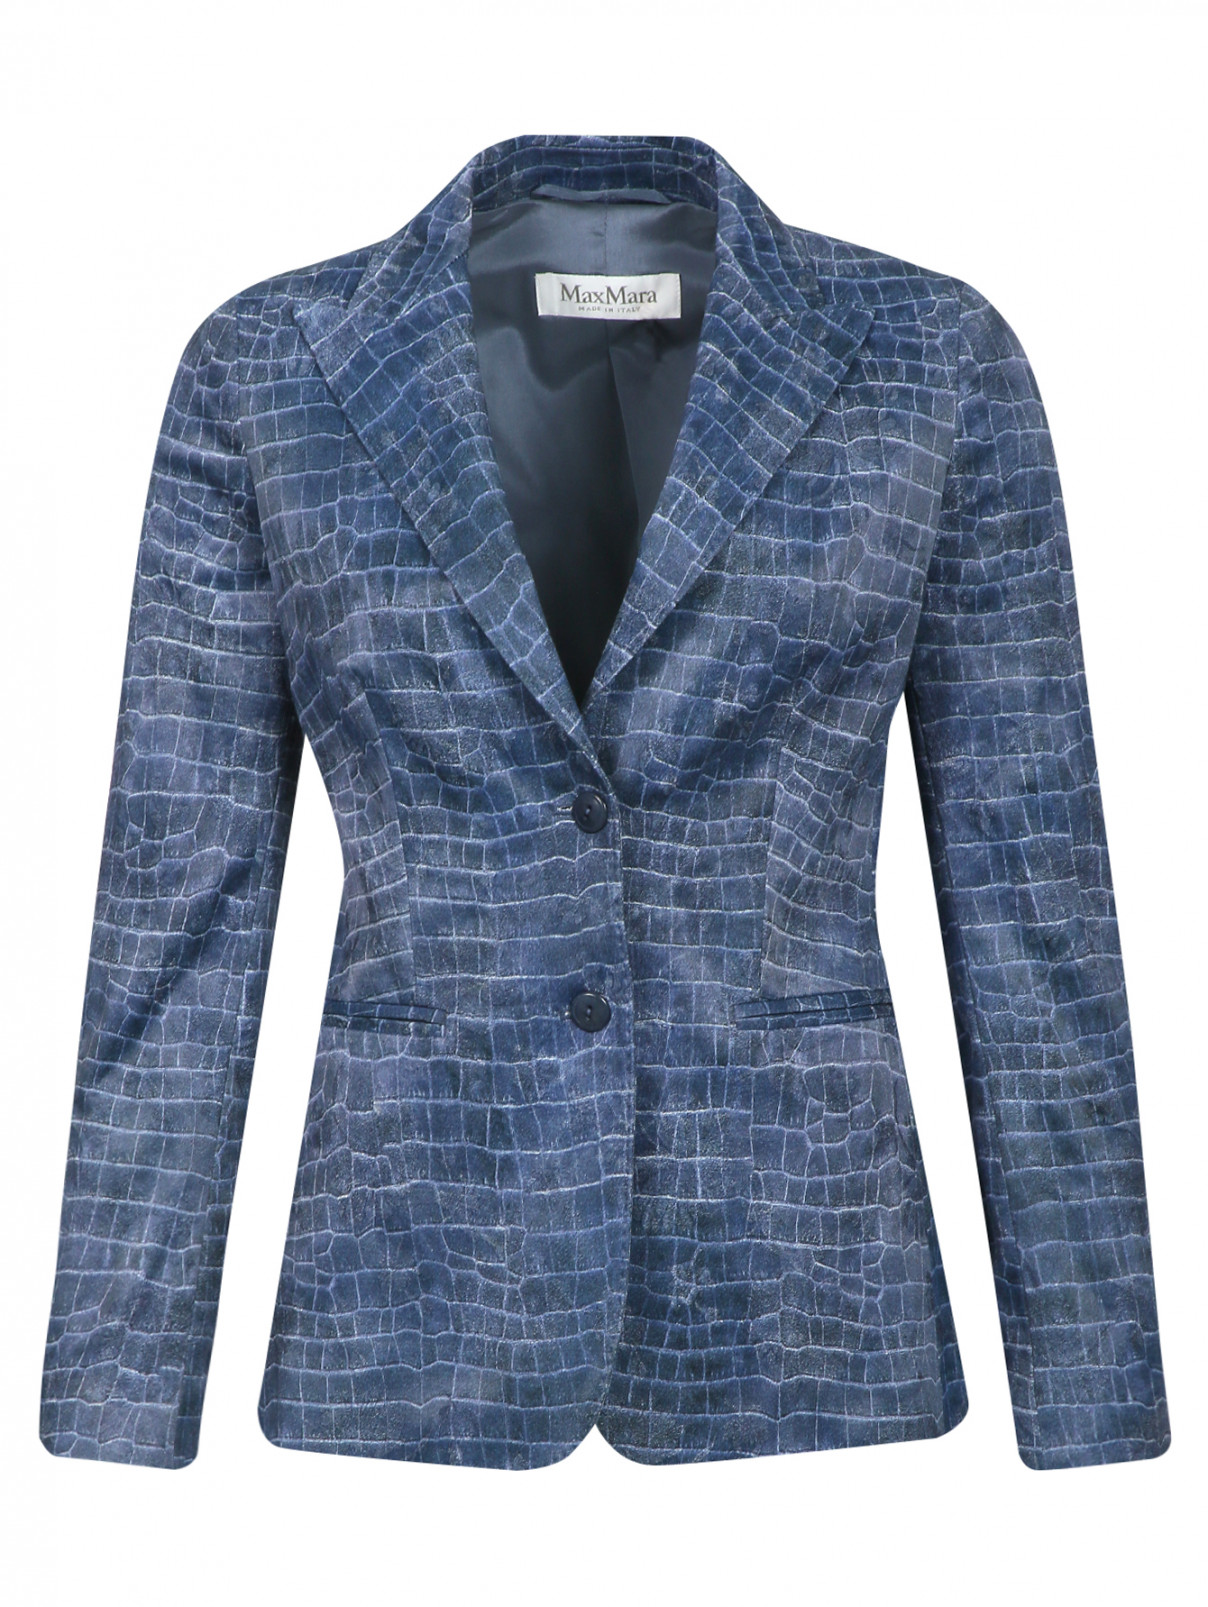 Пиджак из хлопка с узором Max Mara  –  Общий вид  – Цвет:  Синий